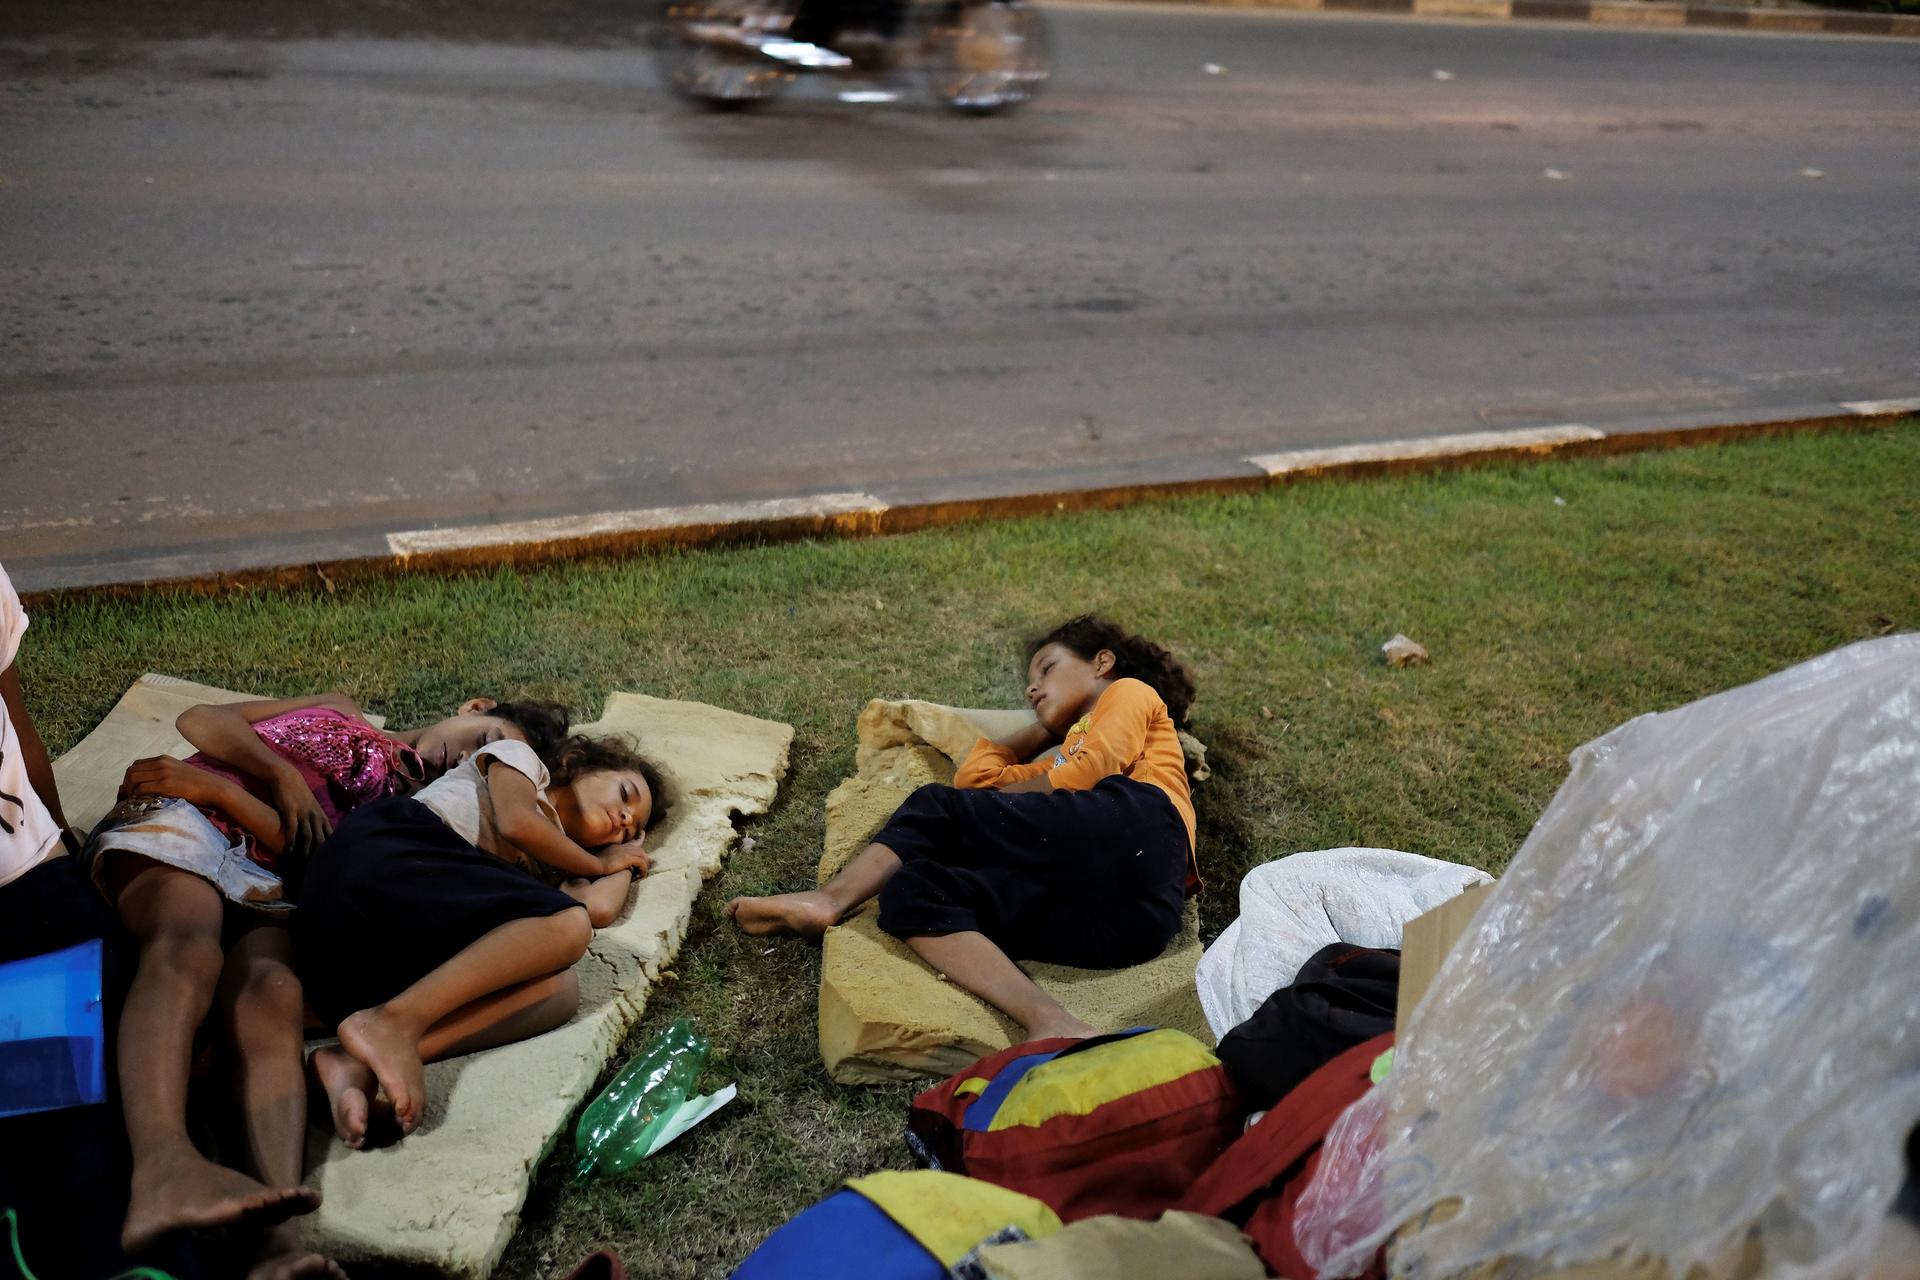 Venezuelan children sleep on the grass